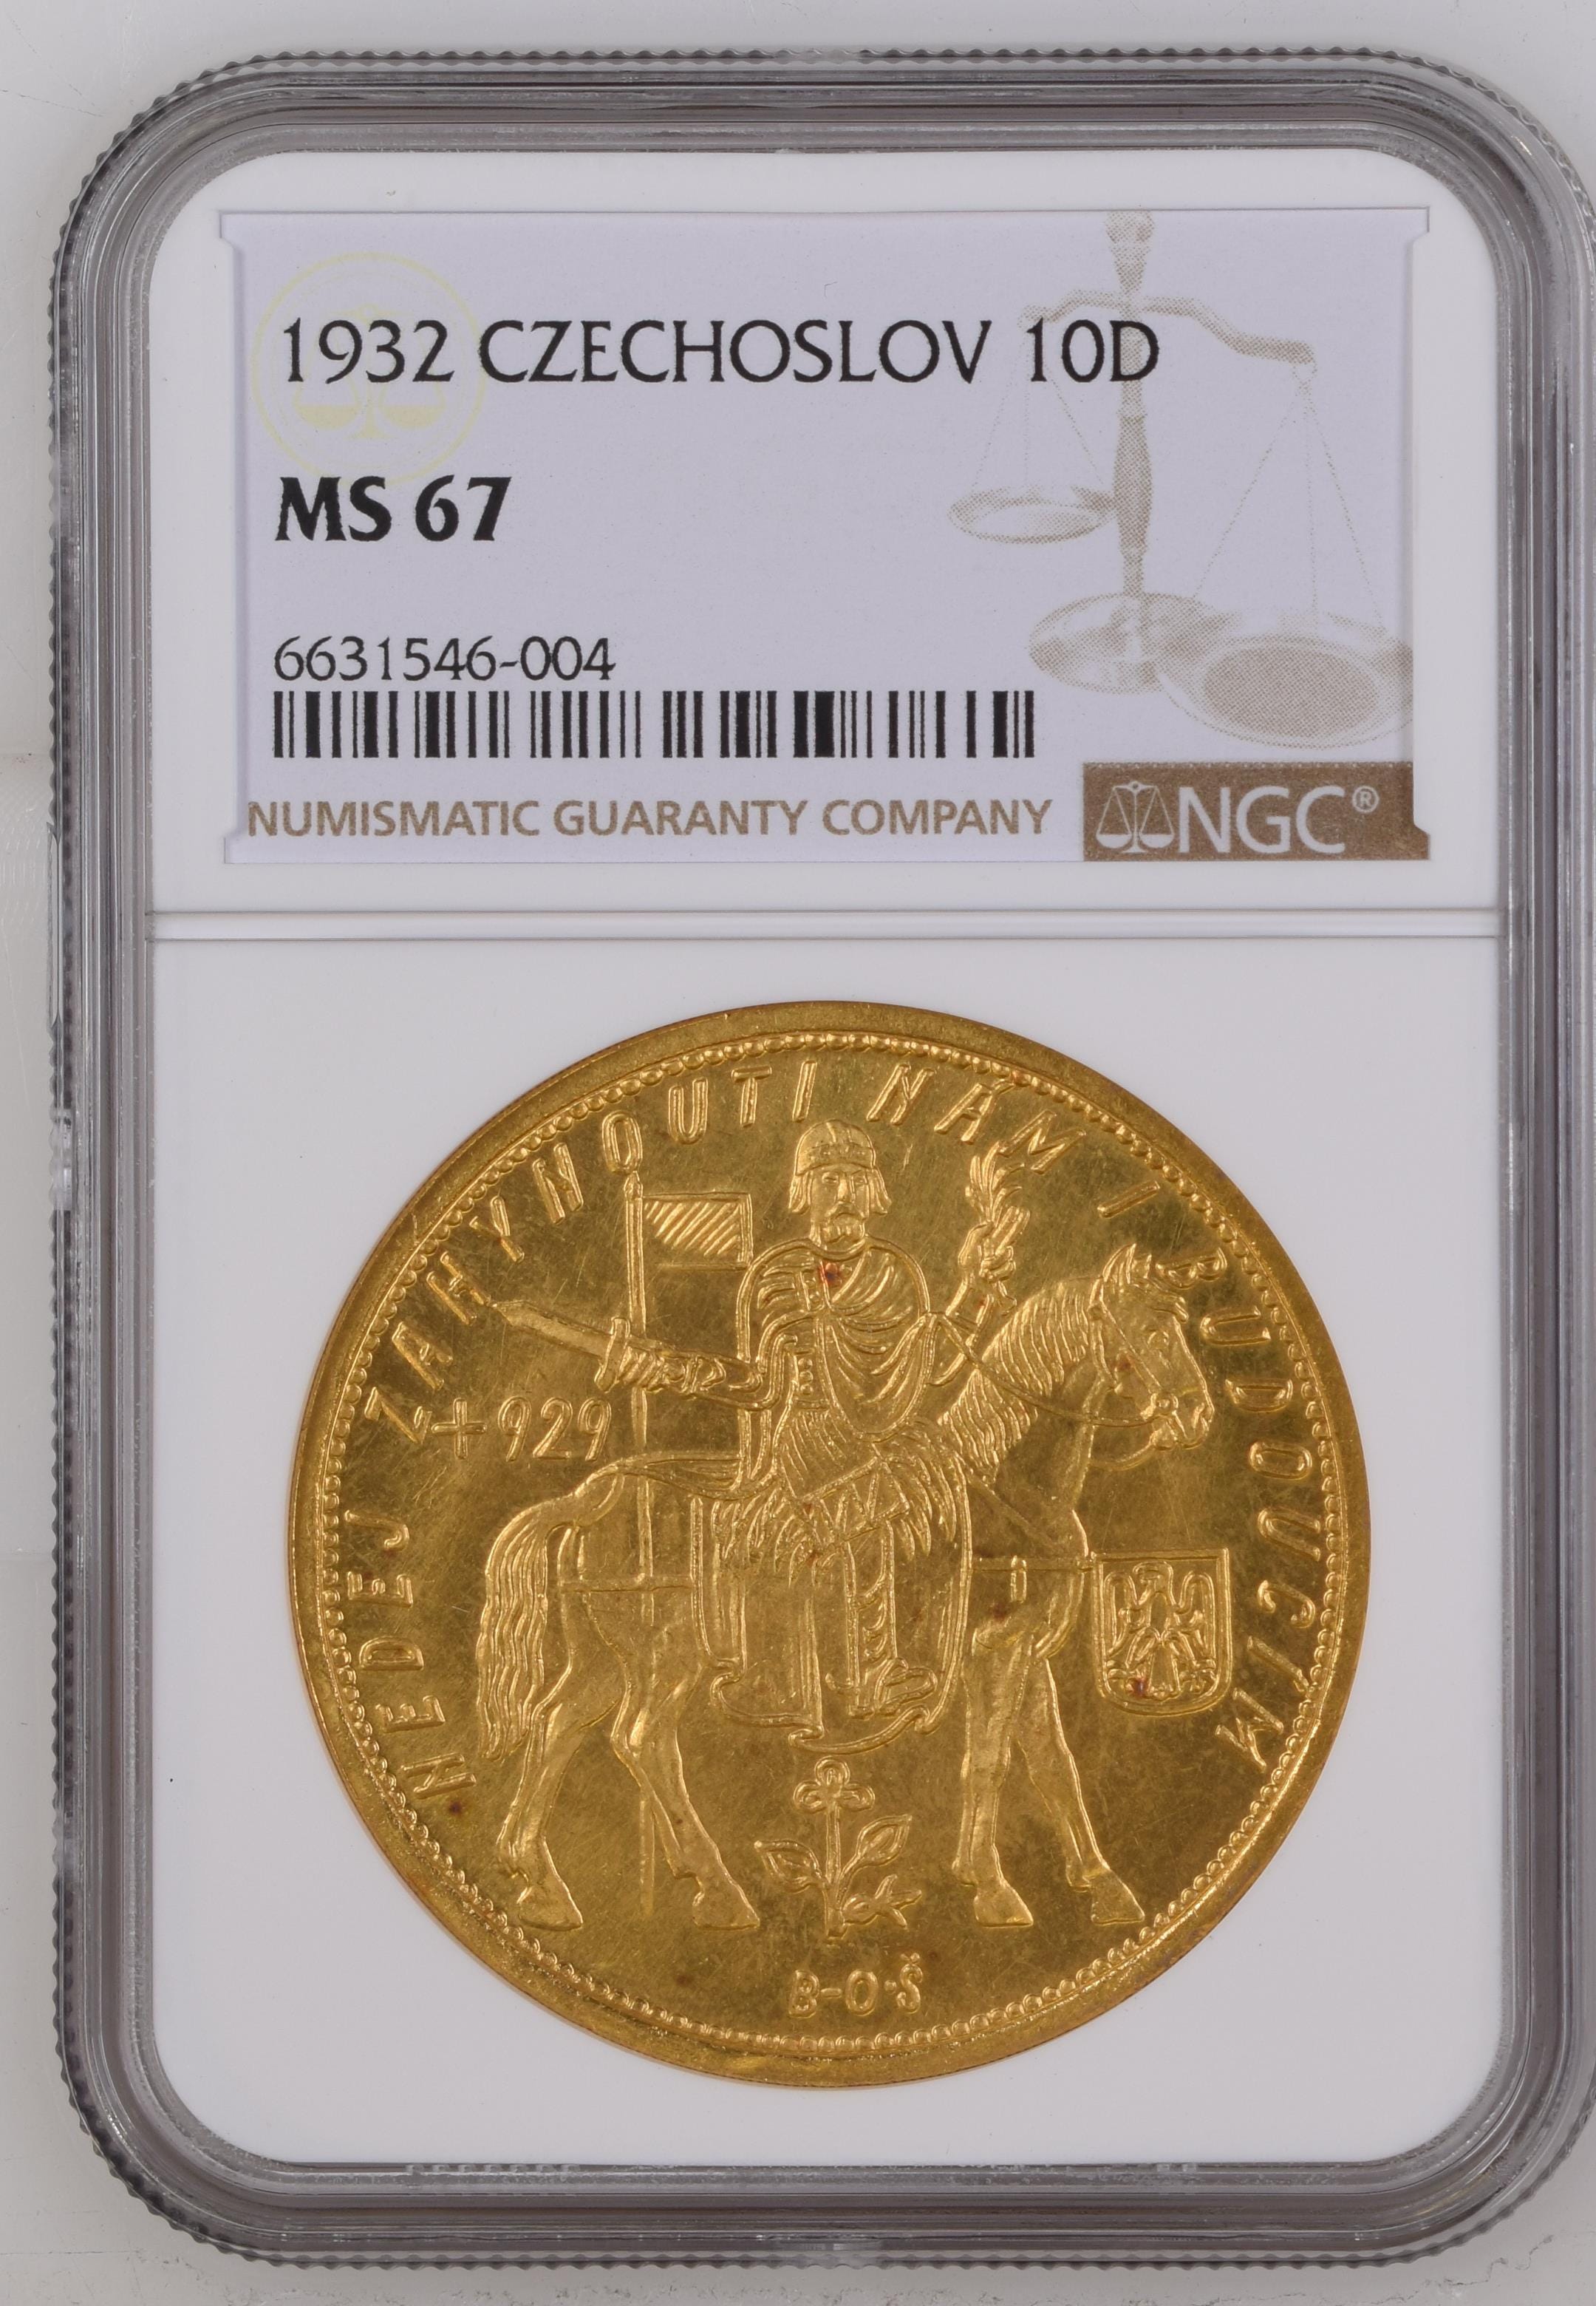 1932年 チェコスロバキア 馬上の聖ヴァーツラフ 10ダカット金貨 NGC